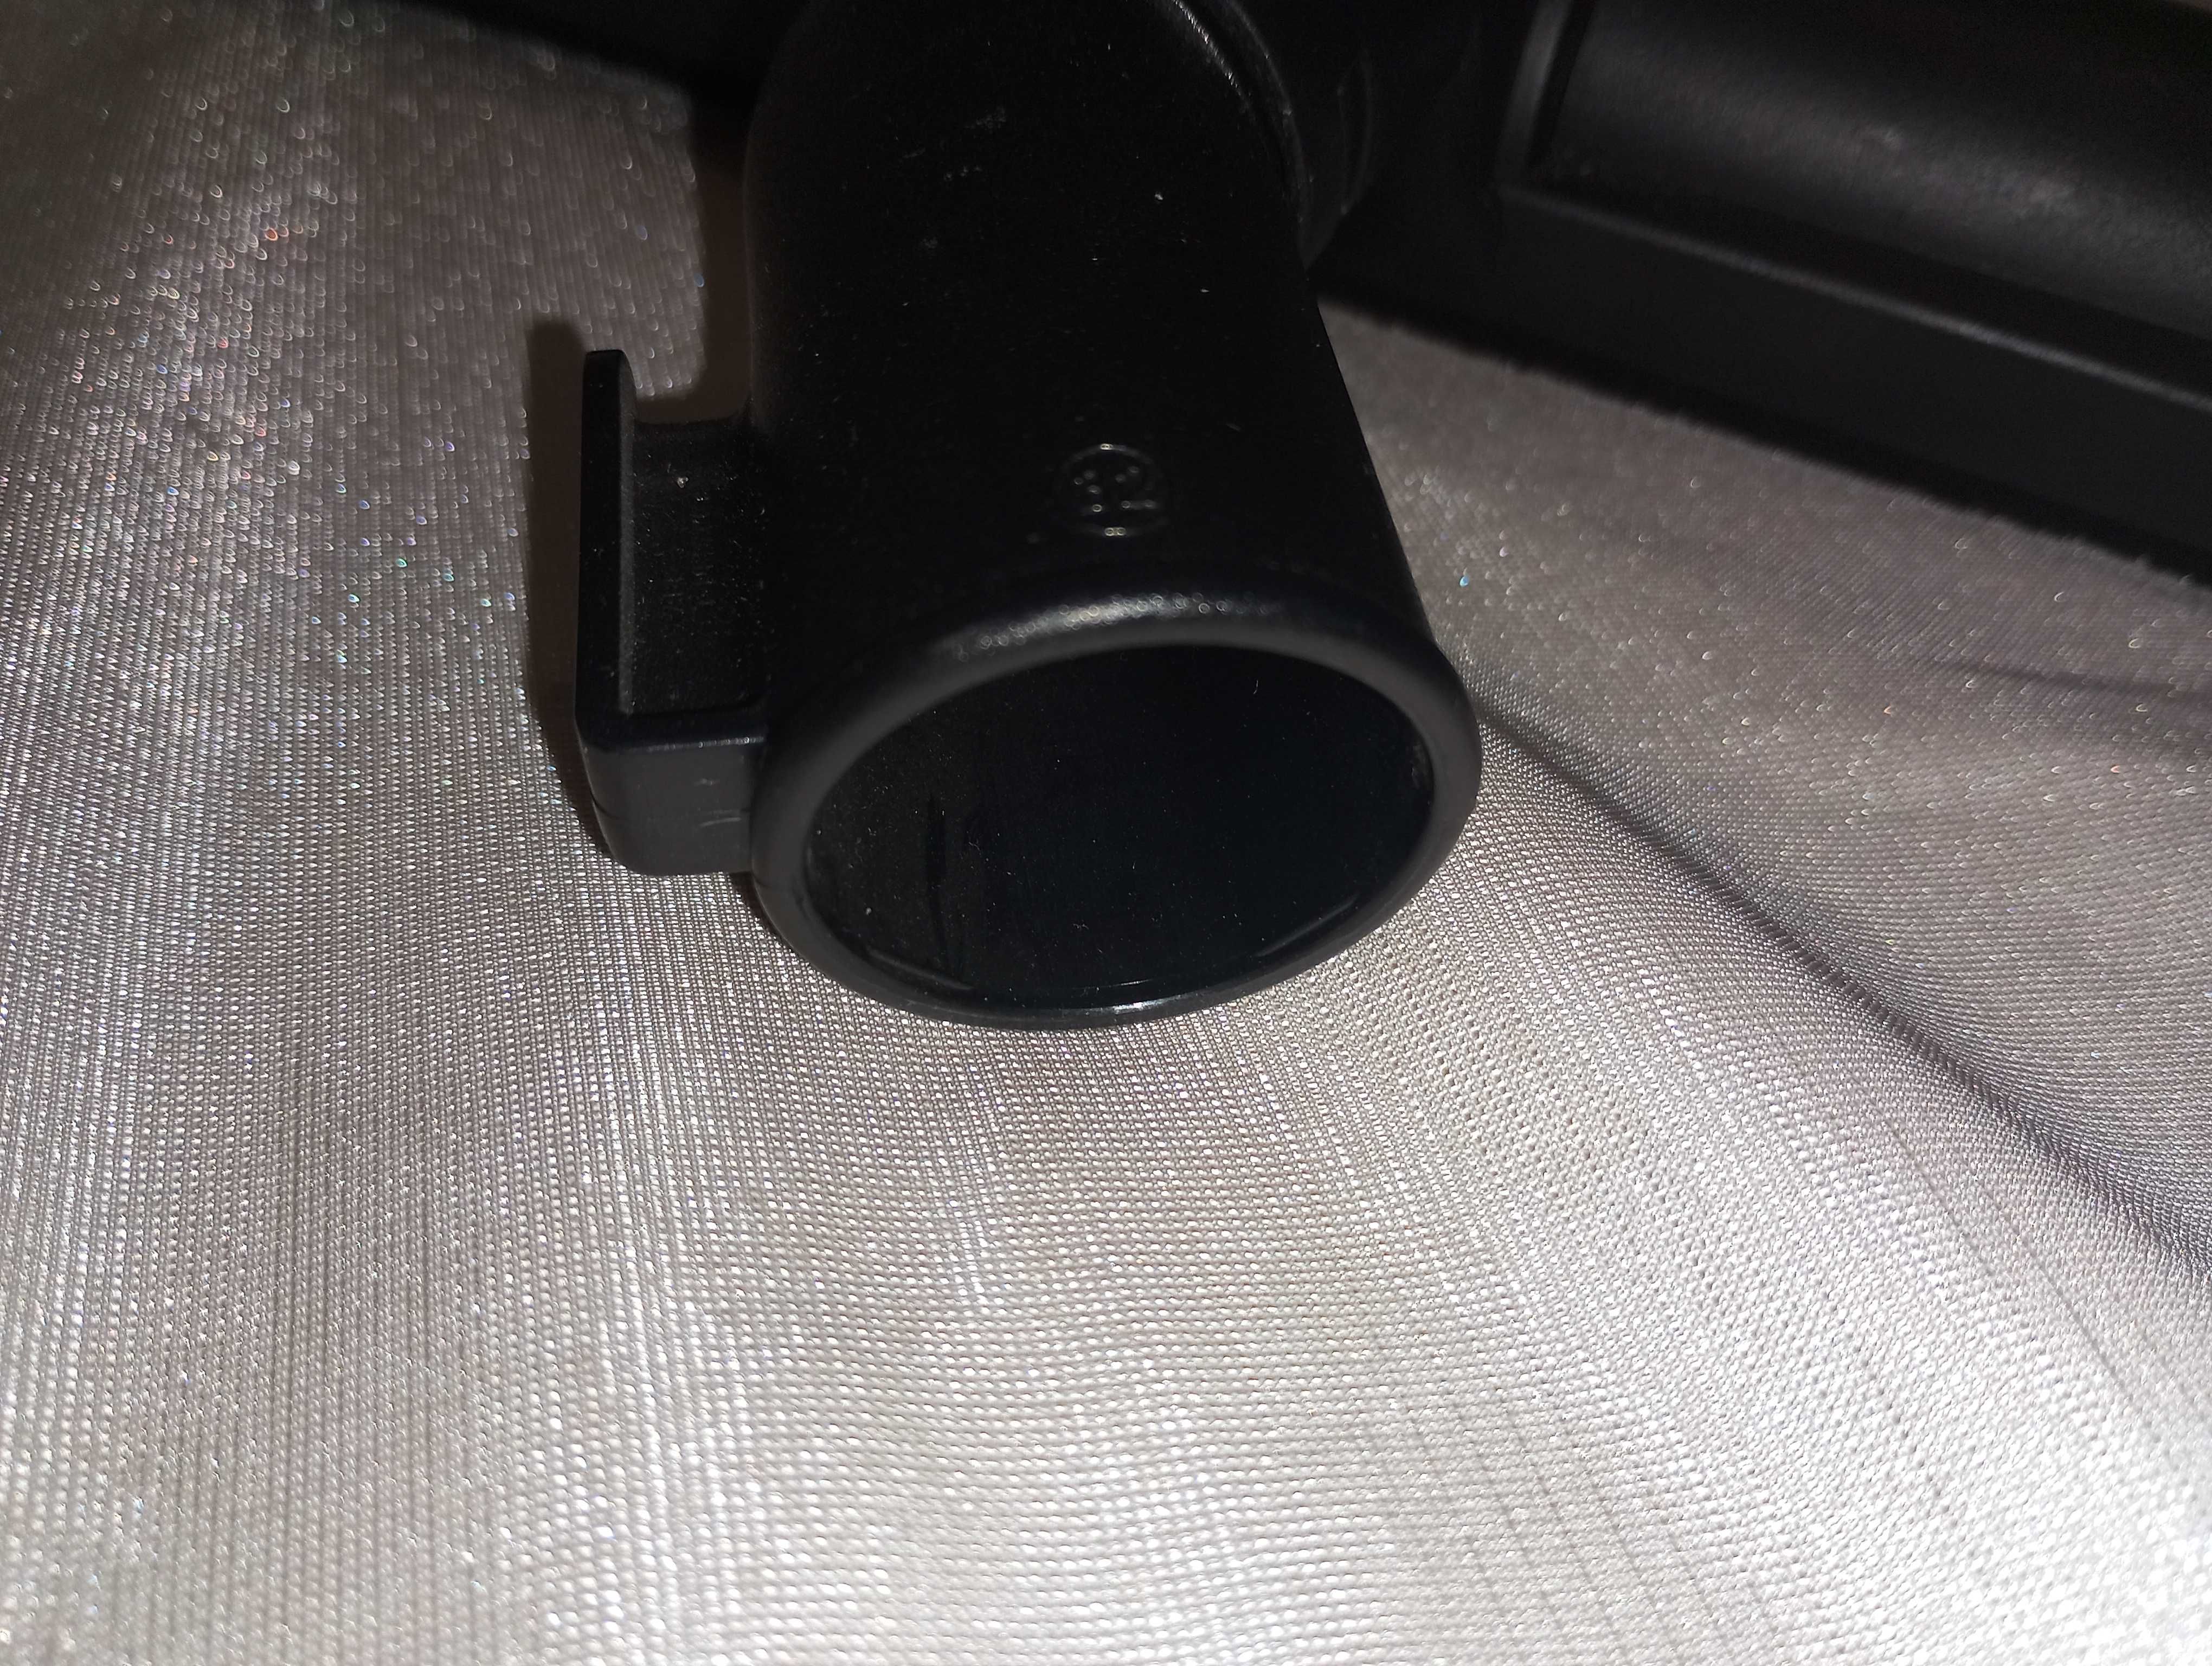 Щетка щотка насадка Ф 32 и 34 мм труба телескопическая для пылесоса